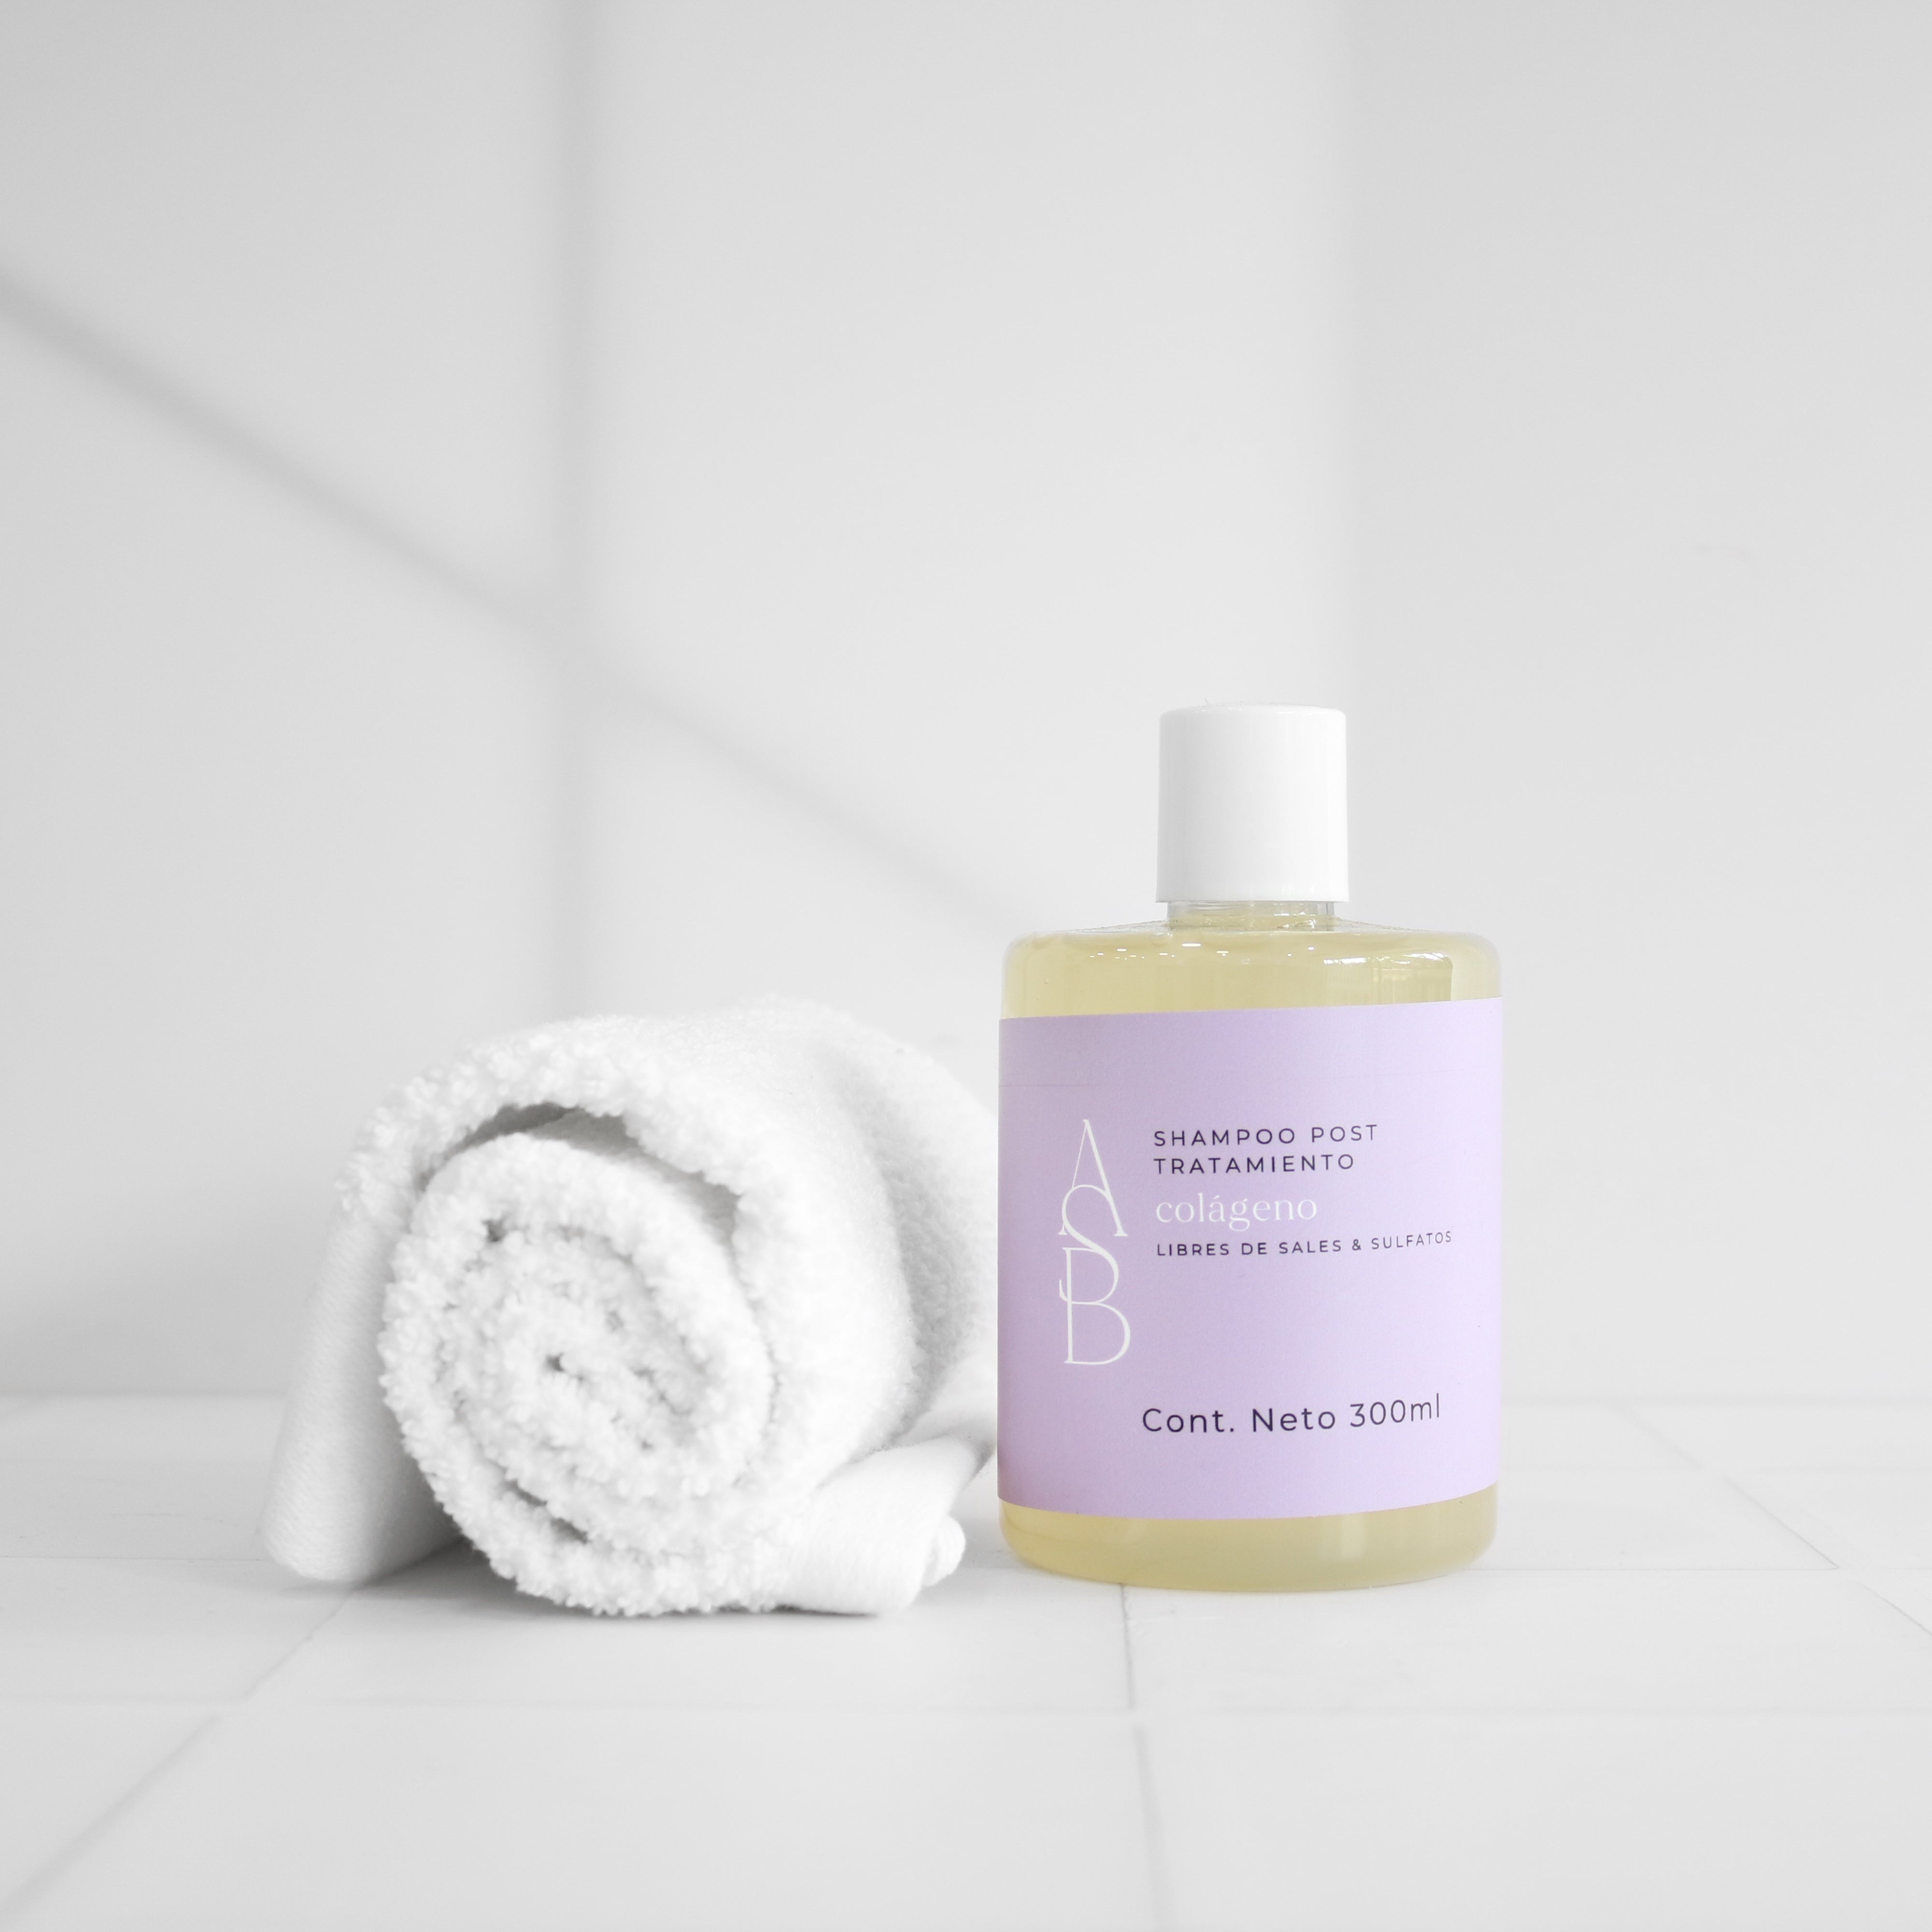 Colágeno - Shampoo post tratamiento libre de sales & sulfatos